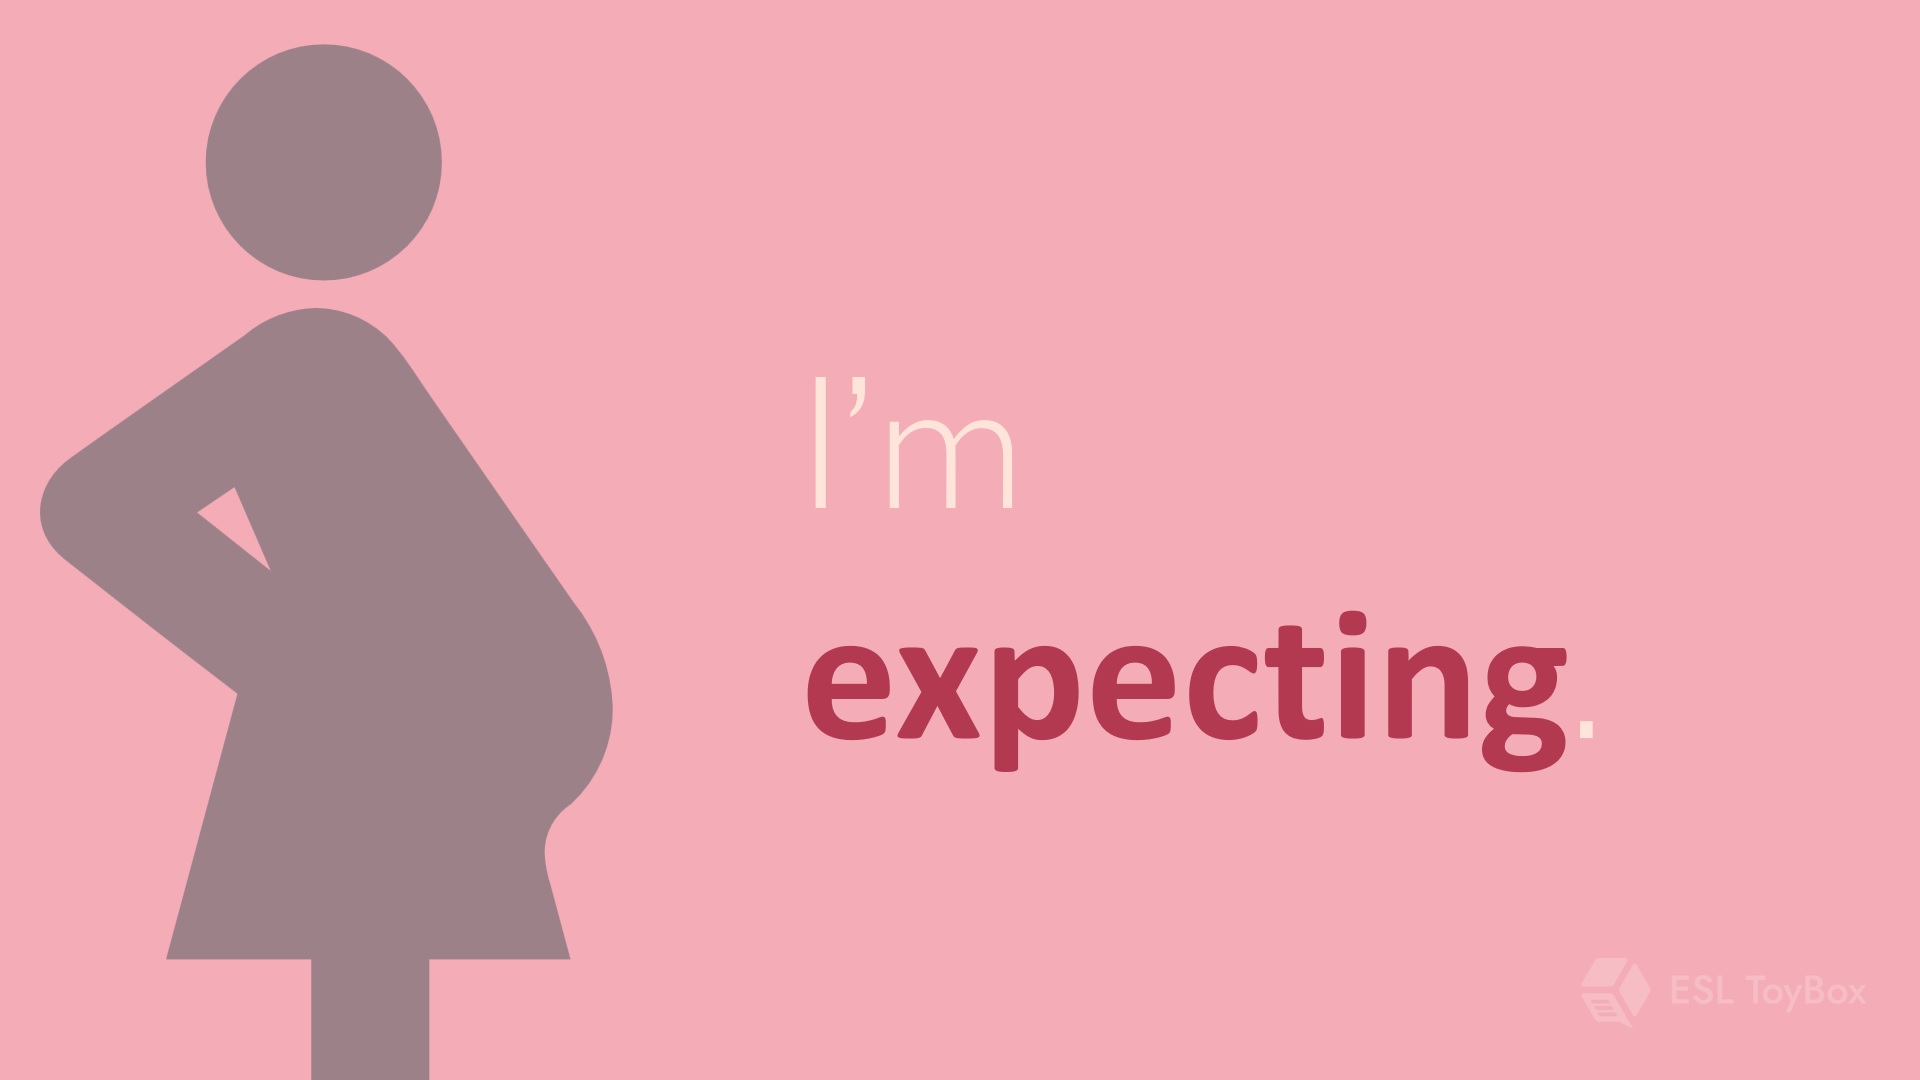 I’m expecting